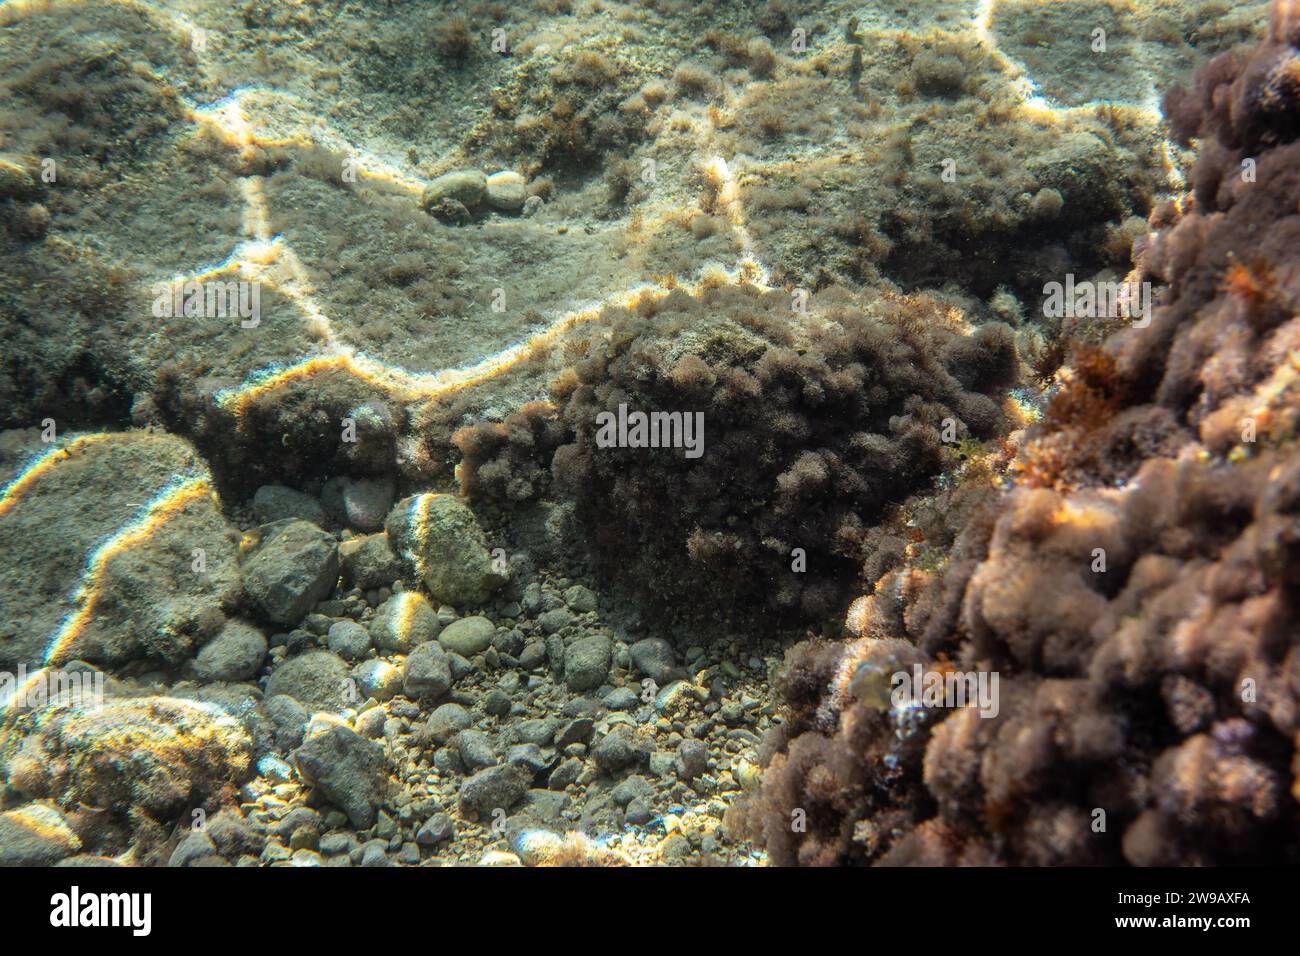 Unterwasserpflanzen und Algen, die auf Felsen in der Nähe der Meeresoberfläche wachsen - Schnorcheln in Limni, Griechenland. Stockfoto